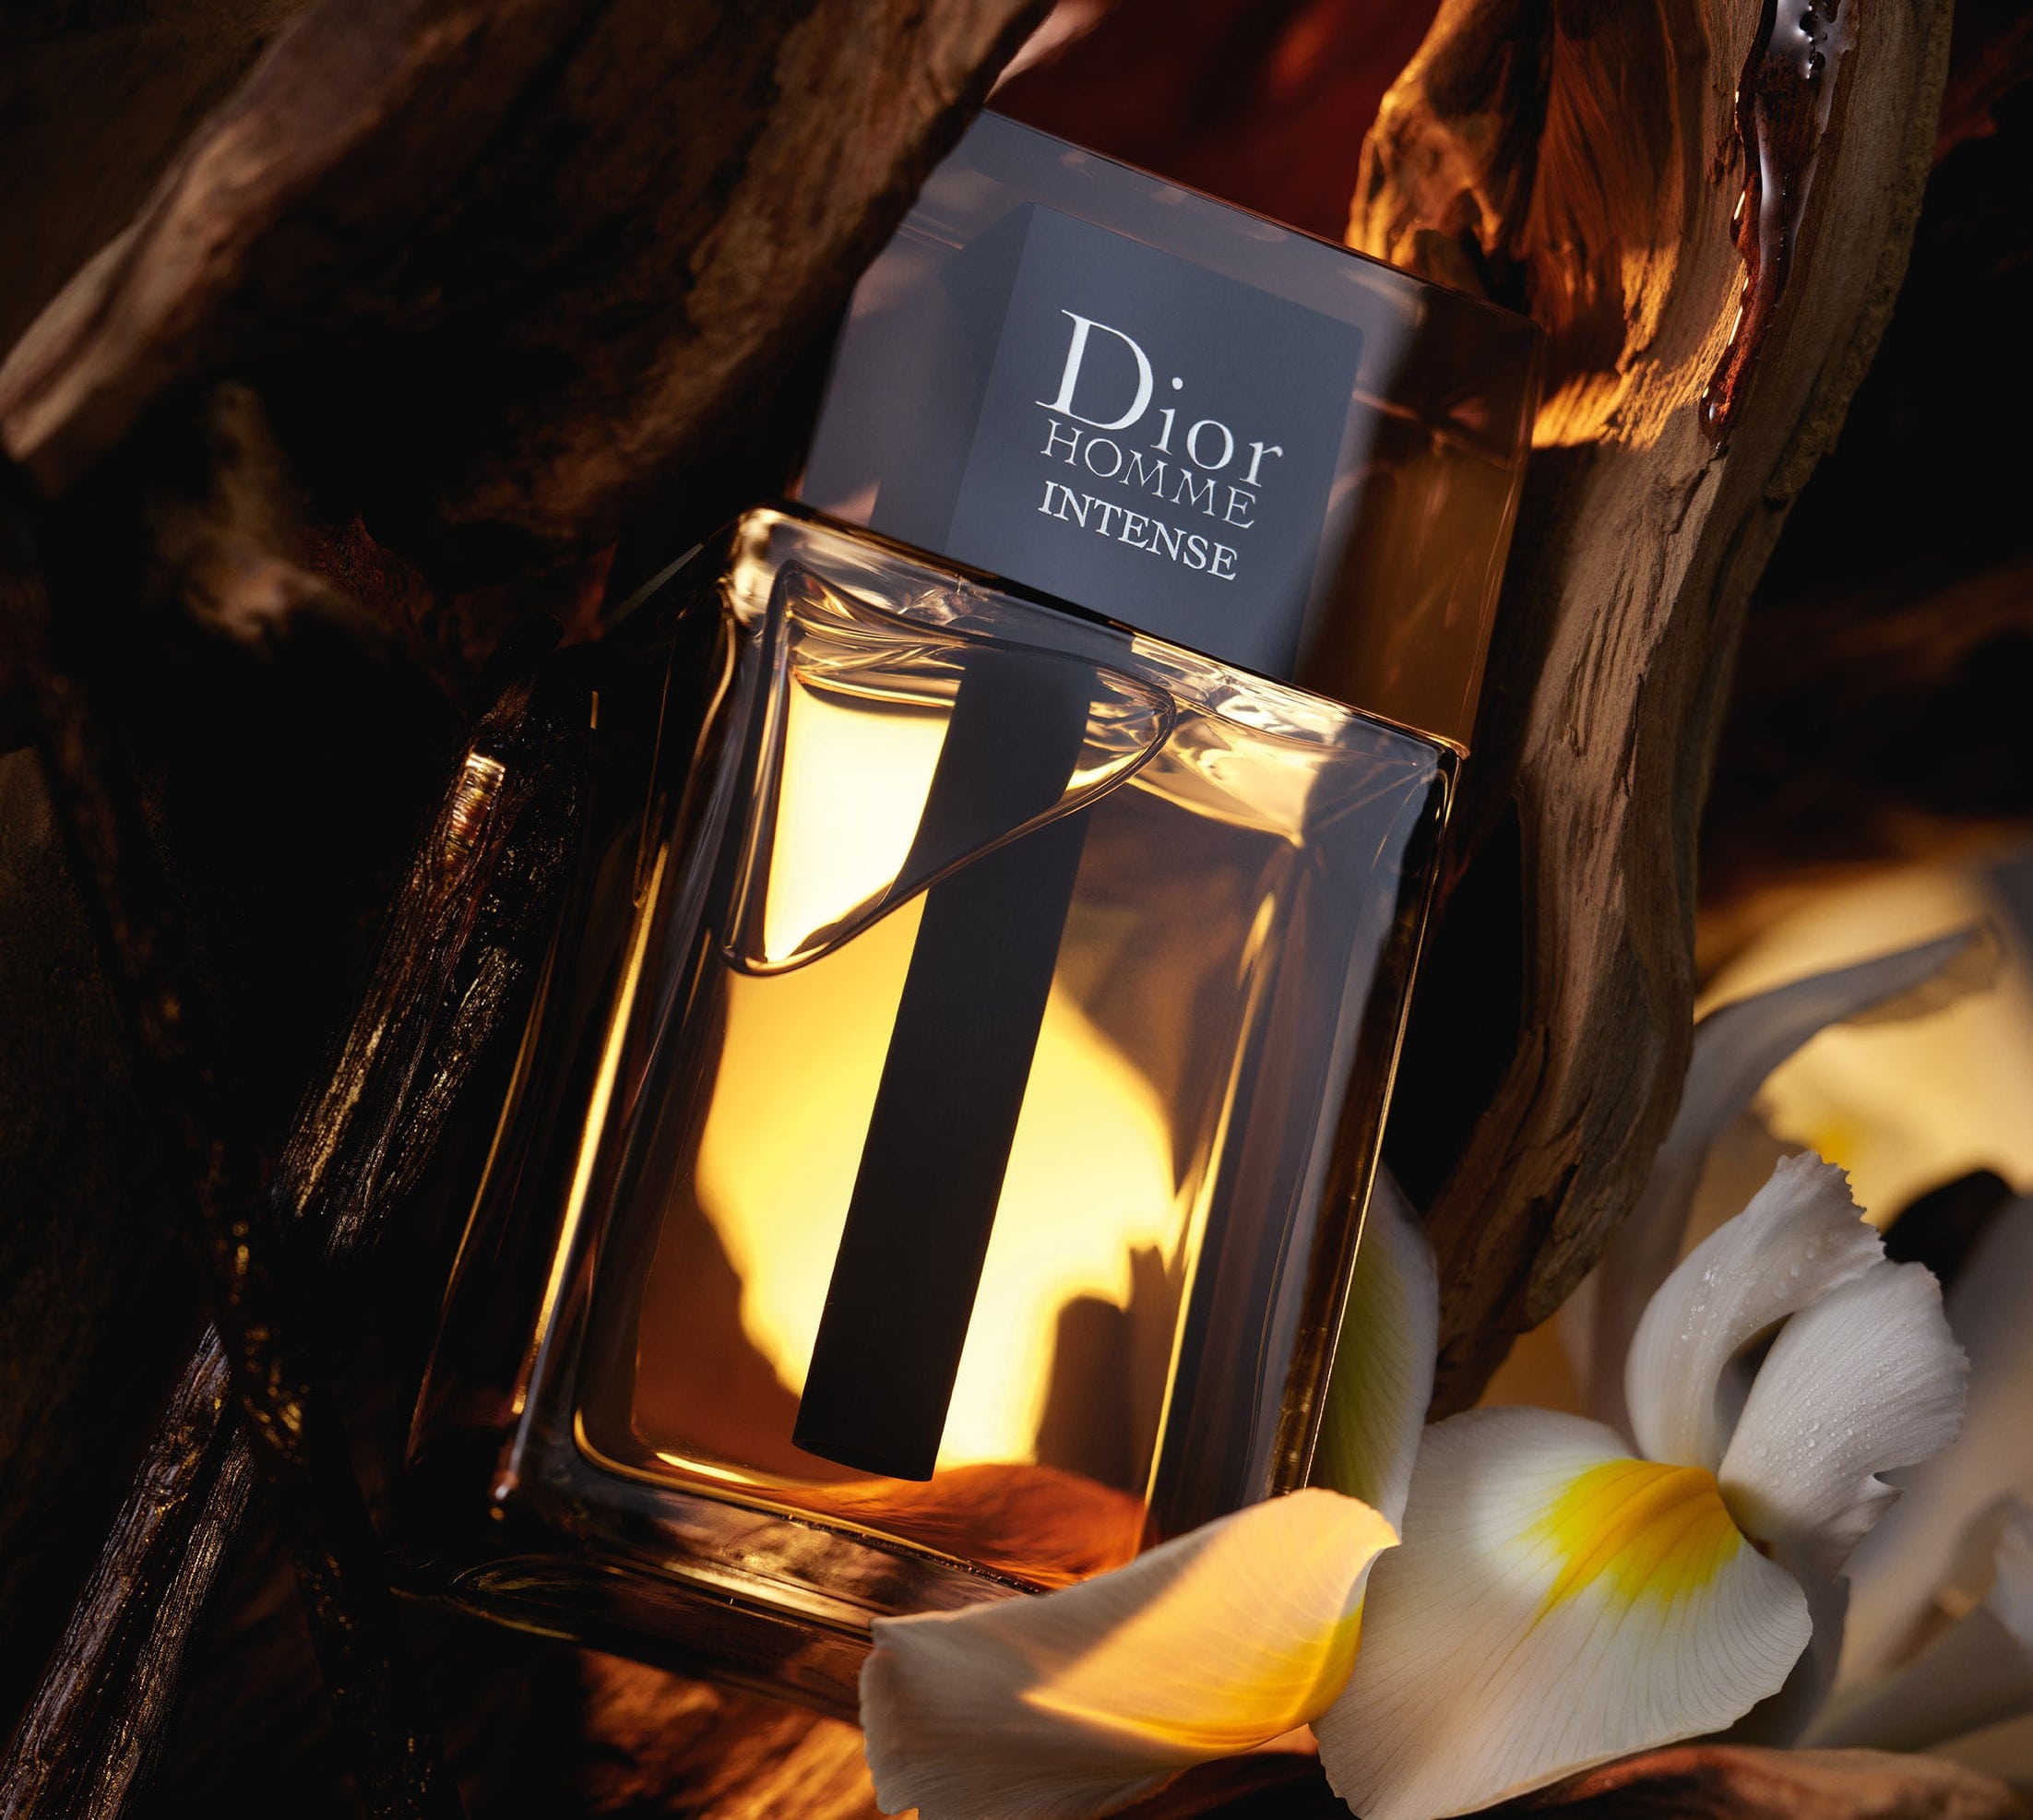 Dior Homme intense Parfum Spray Perfume for Men by Dior